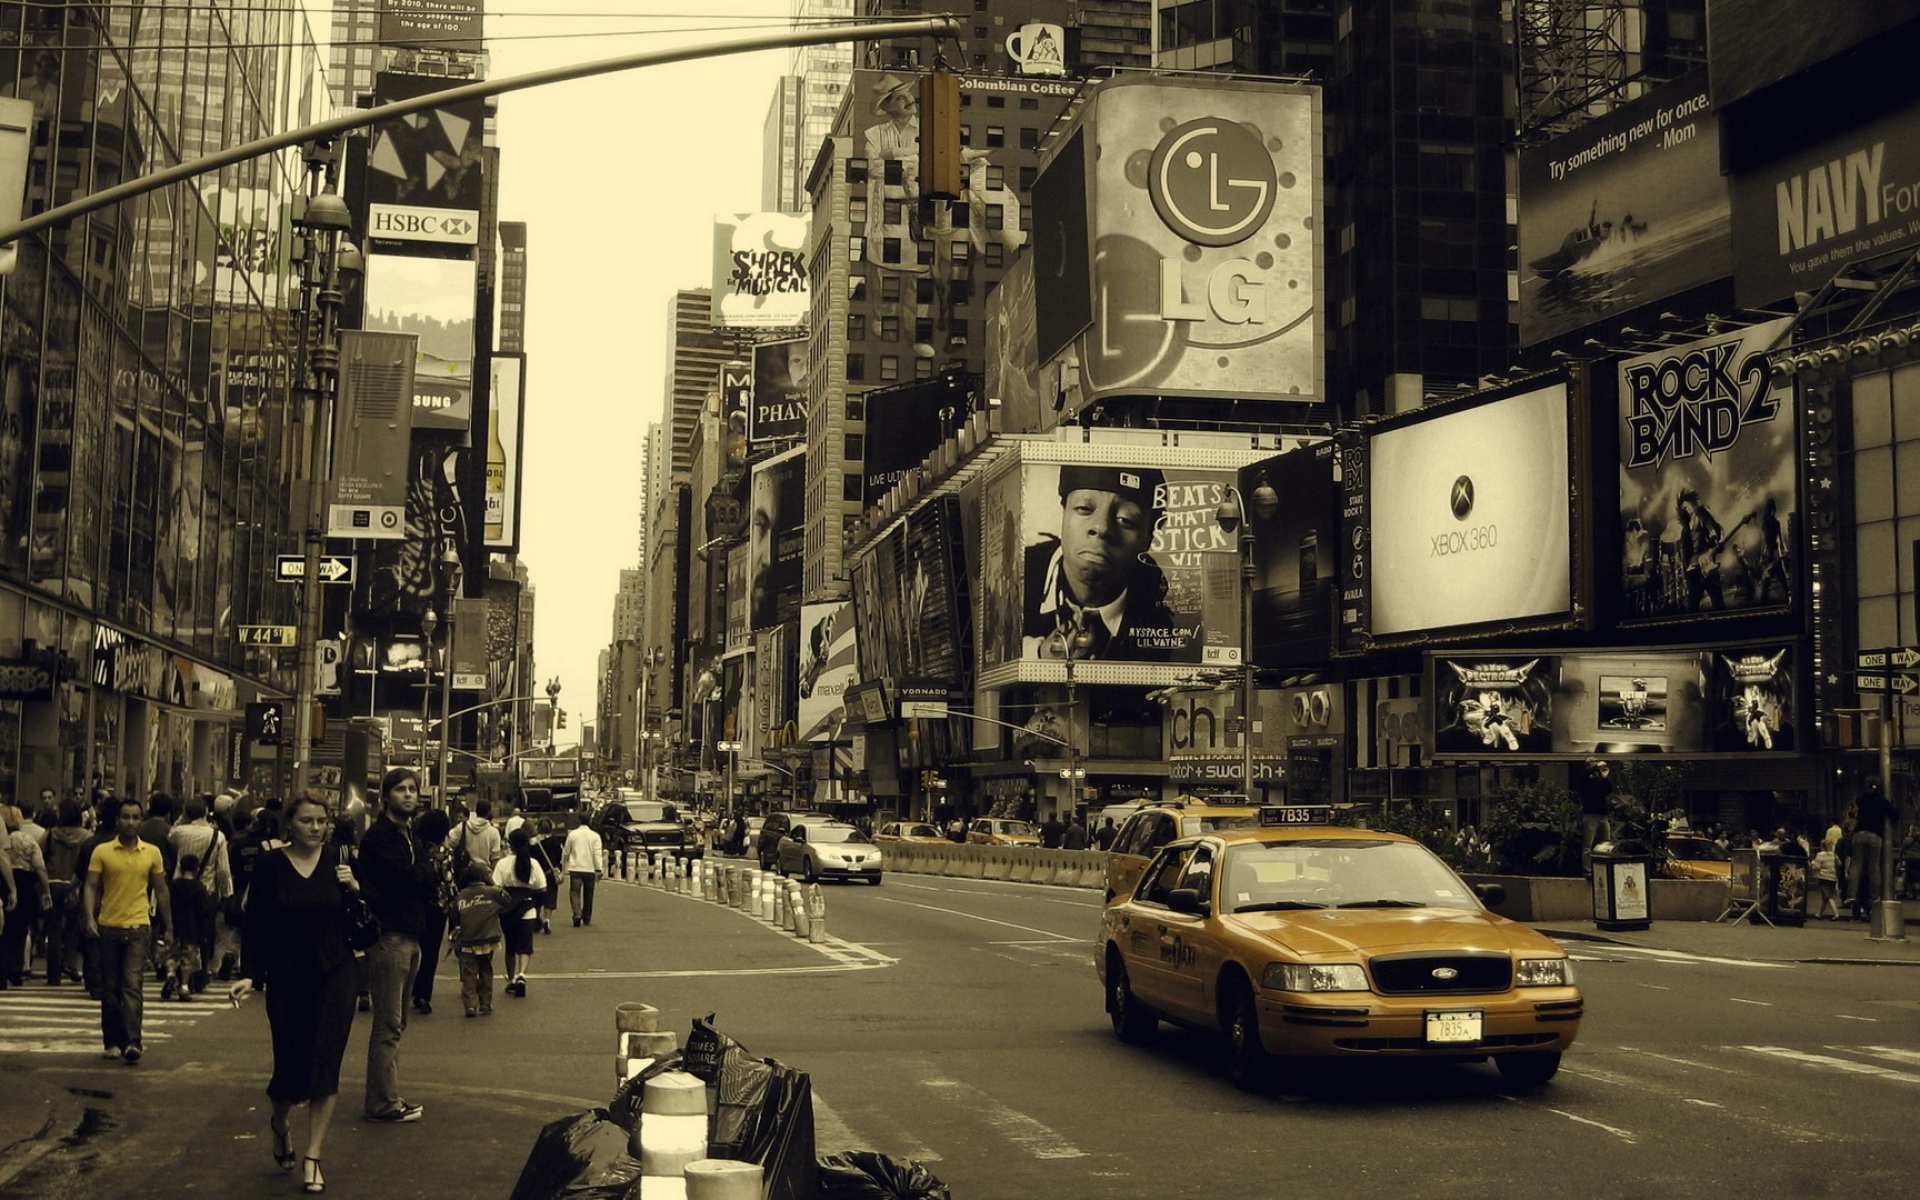 Картинки Нью-Йорк, Манхэттен, улица, автомобили, люди, занят фото и обои на рабочий стол